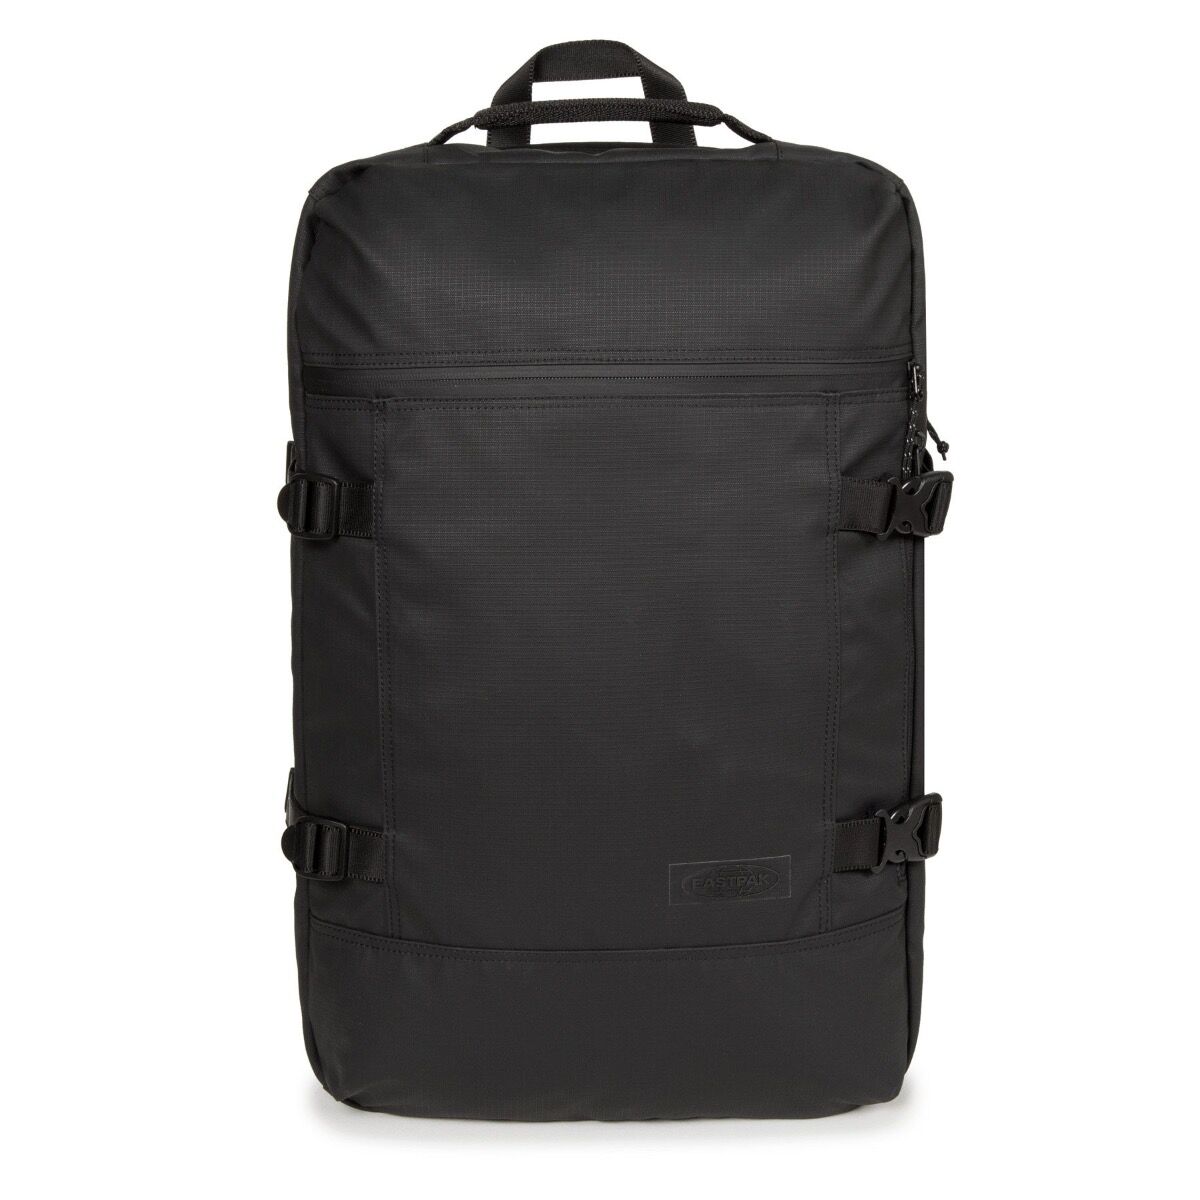 Eastpak Tranzpack travel bag-Surfaced black